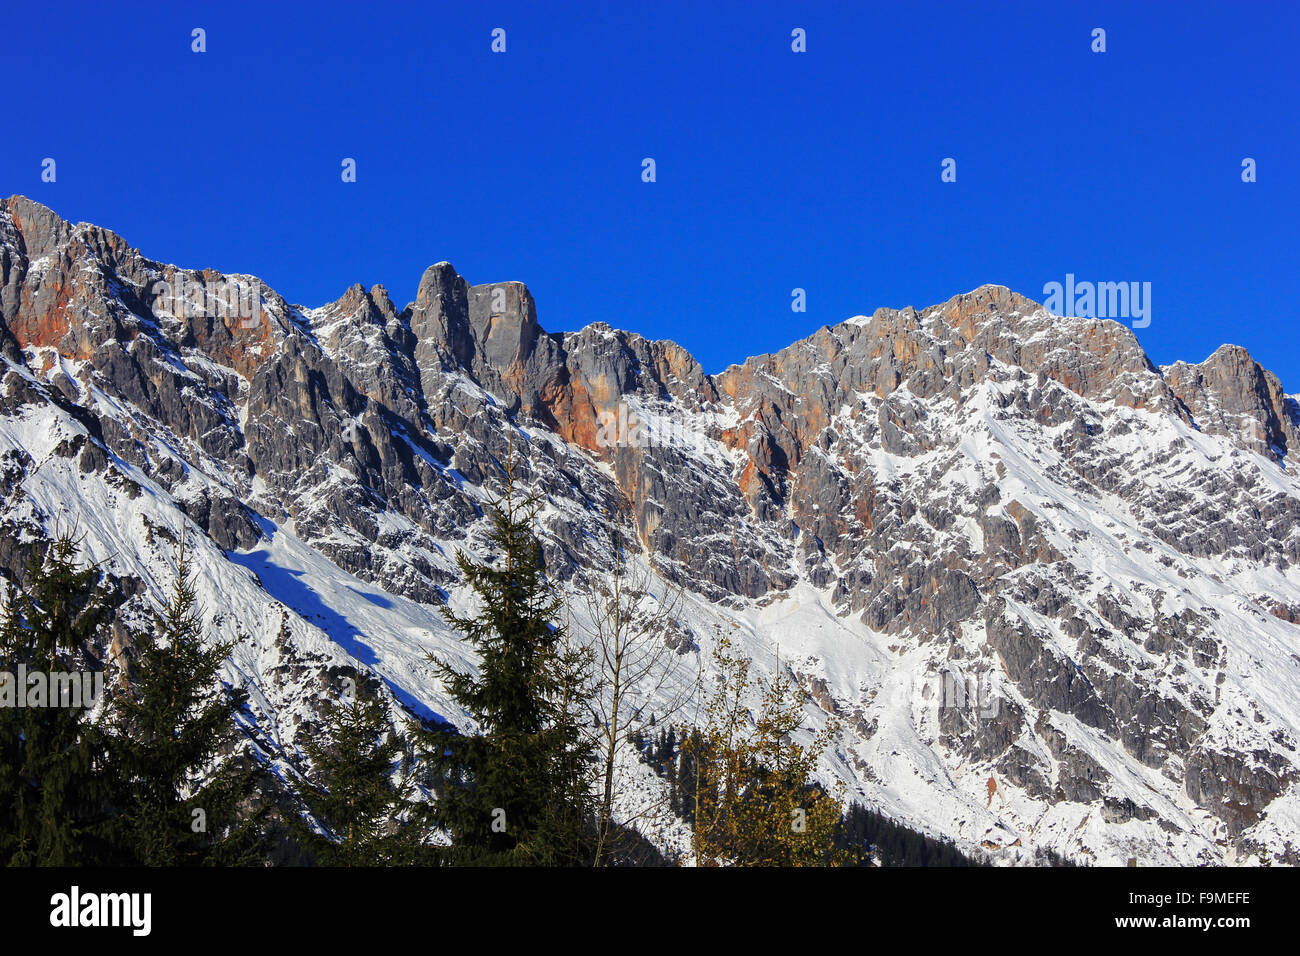 winter landscape in Austria Alps, snow sun and Snowy winter scene Stock Photo